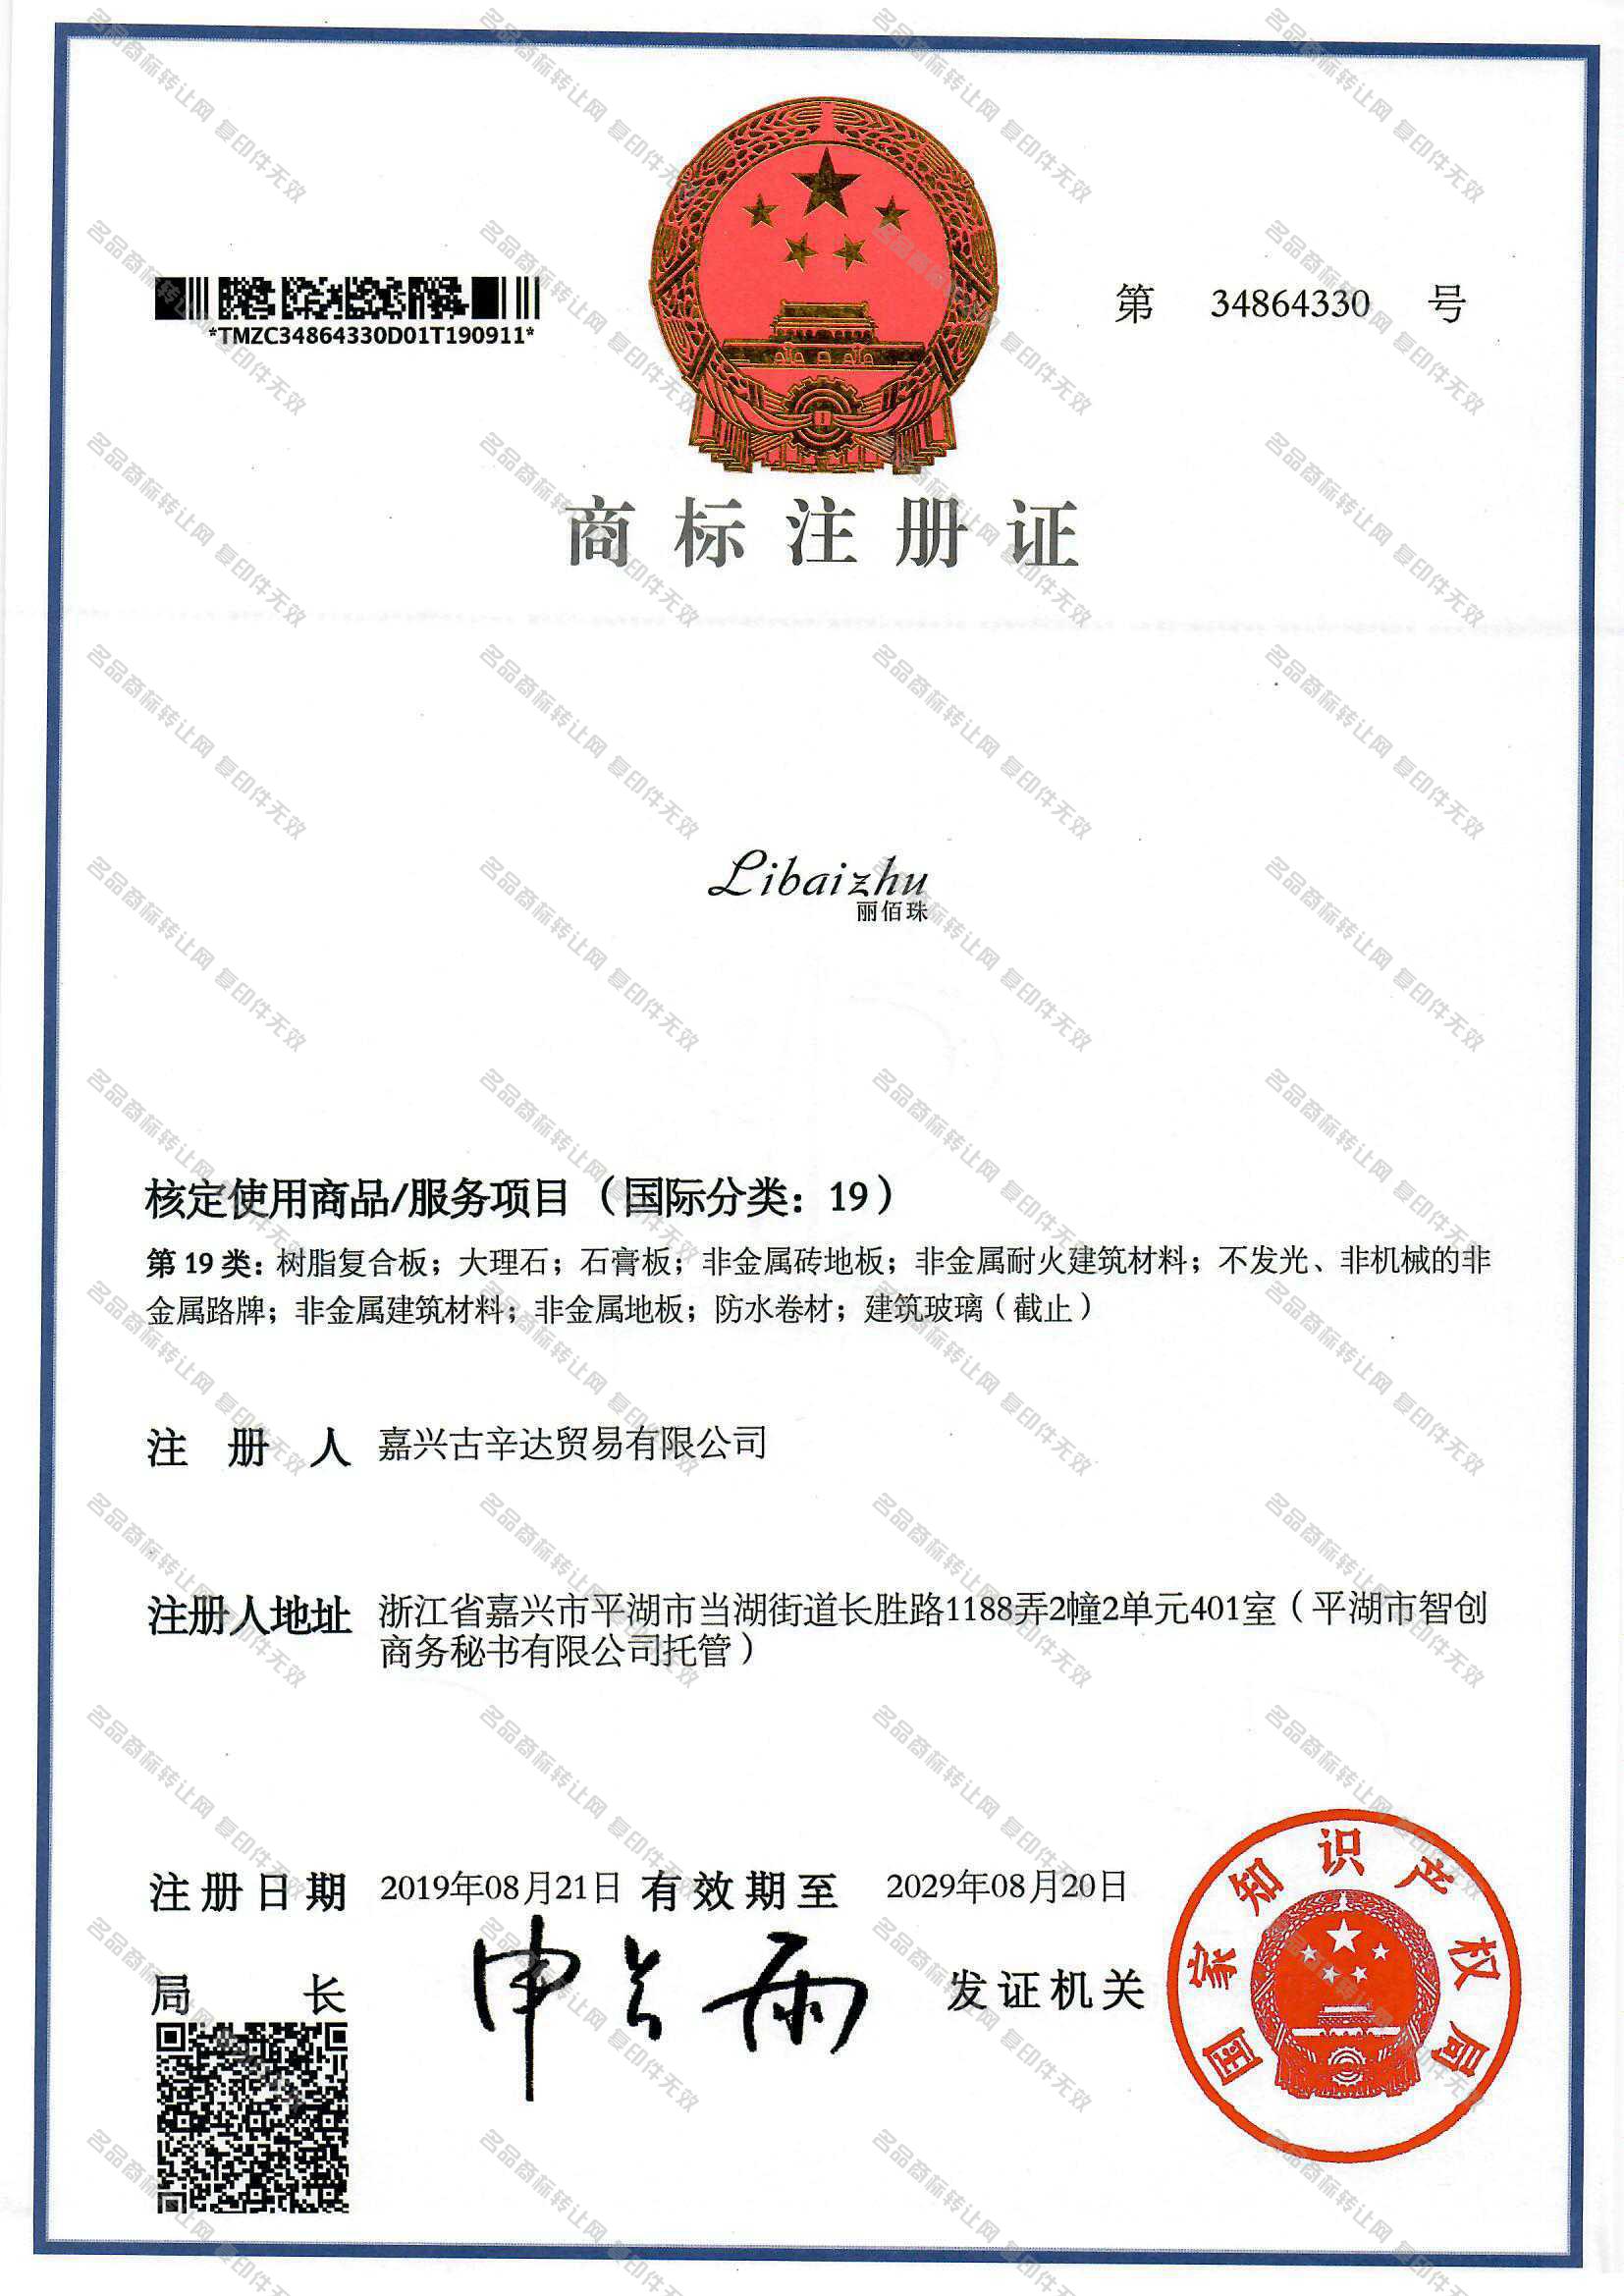 丽佰珠 LIBAIZHU注册证